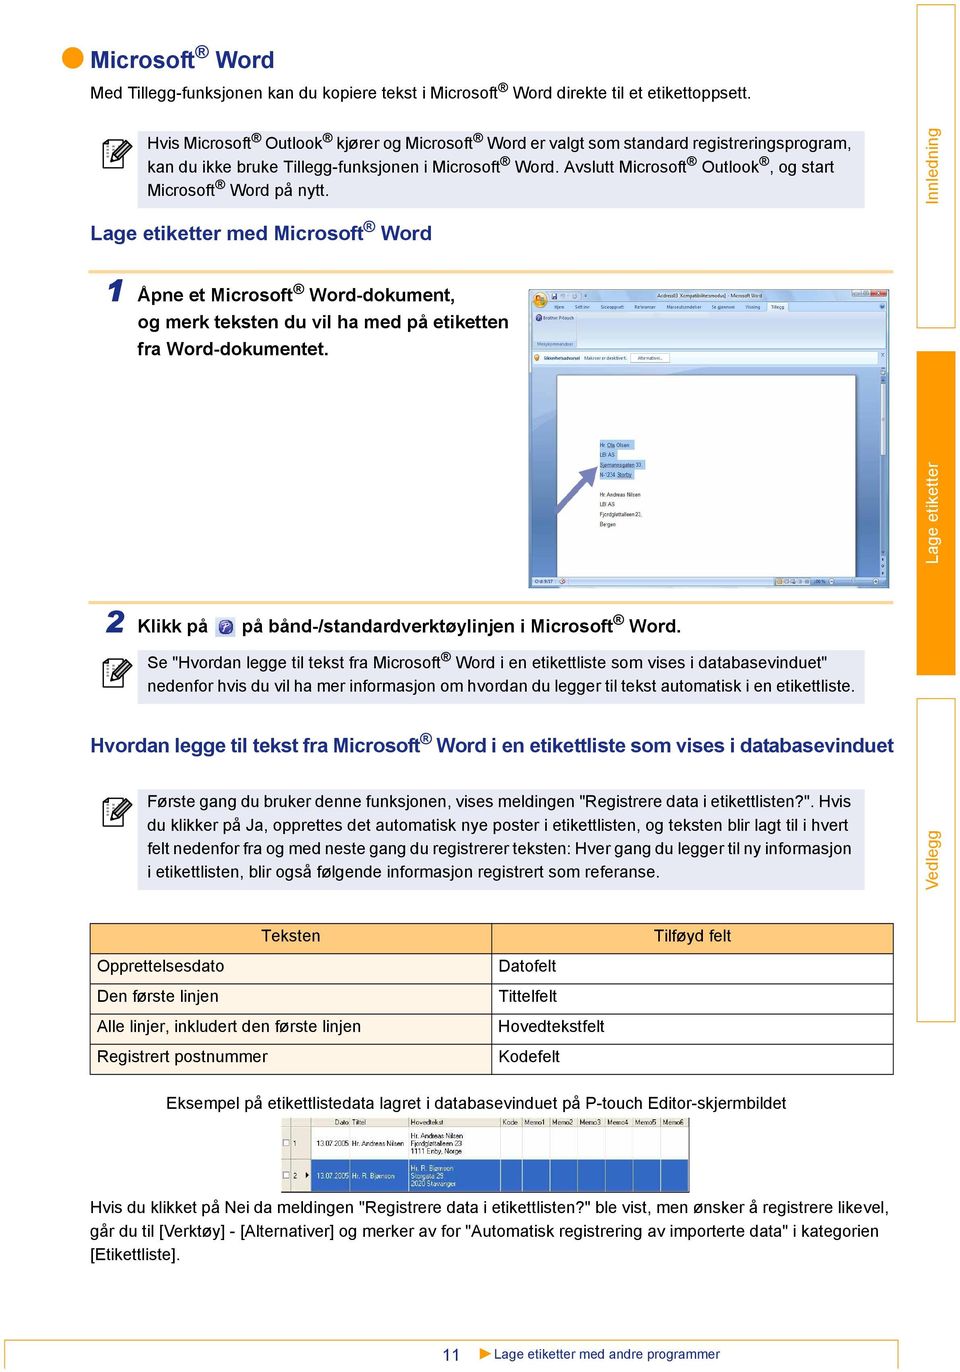 Avslutt Microsoft Outlook, og start Microsoft Word på nytt. med Microsoft Word 1 Åpne et Microsoft Word-dokument, og merk teksten du vil ha med på etiketten fra Word-dokumentet.